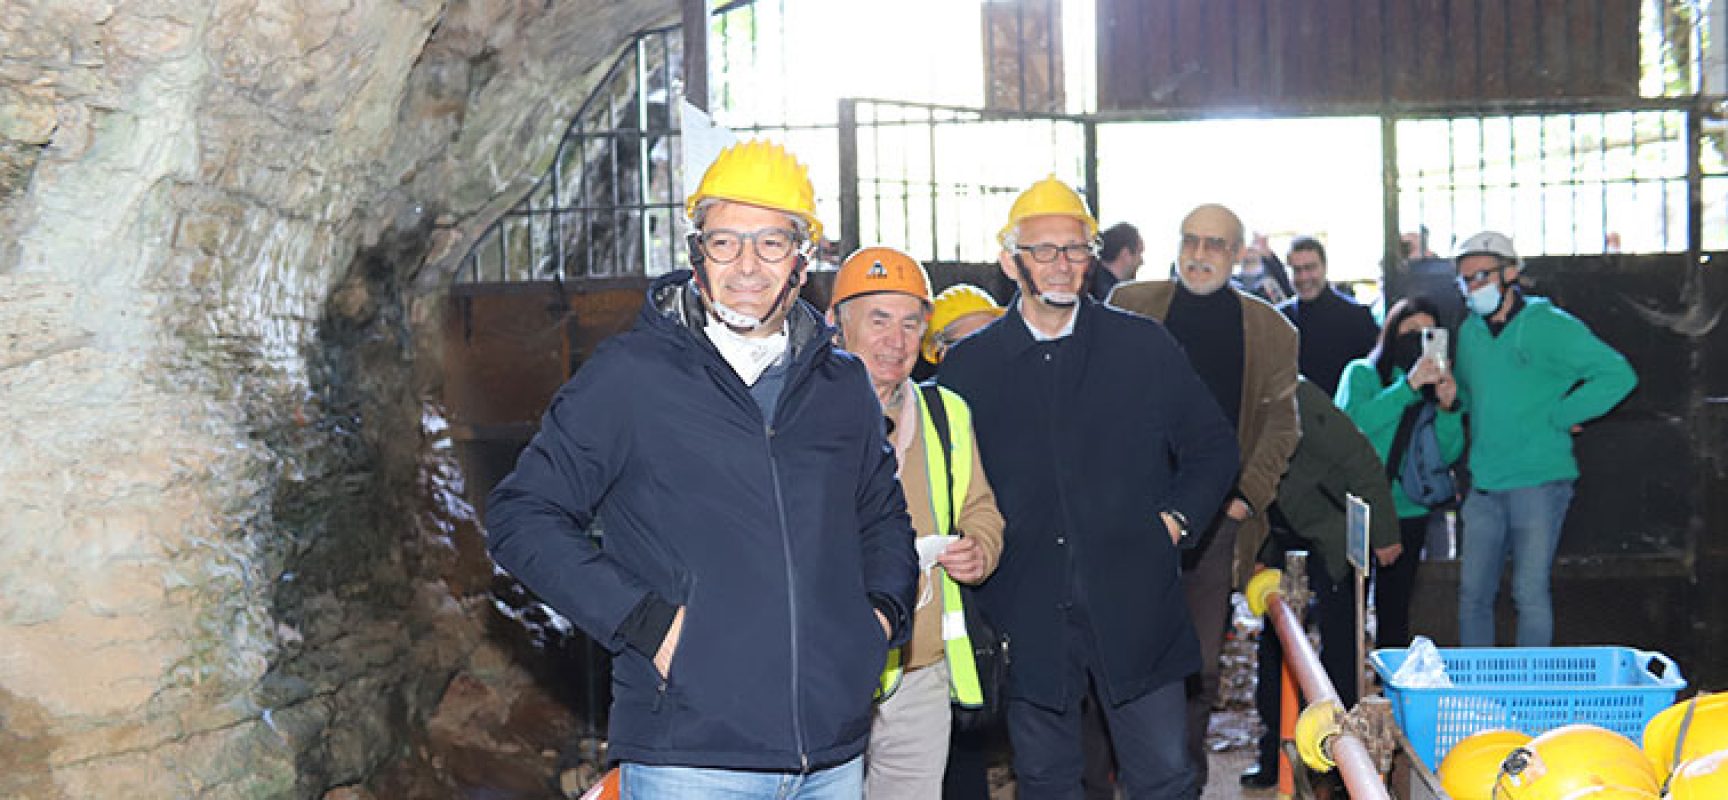 Bisceglie festeggia la riapertura delle Grotte di Santa Croce, Angarano: “Siamo emozionati”